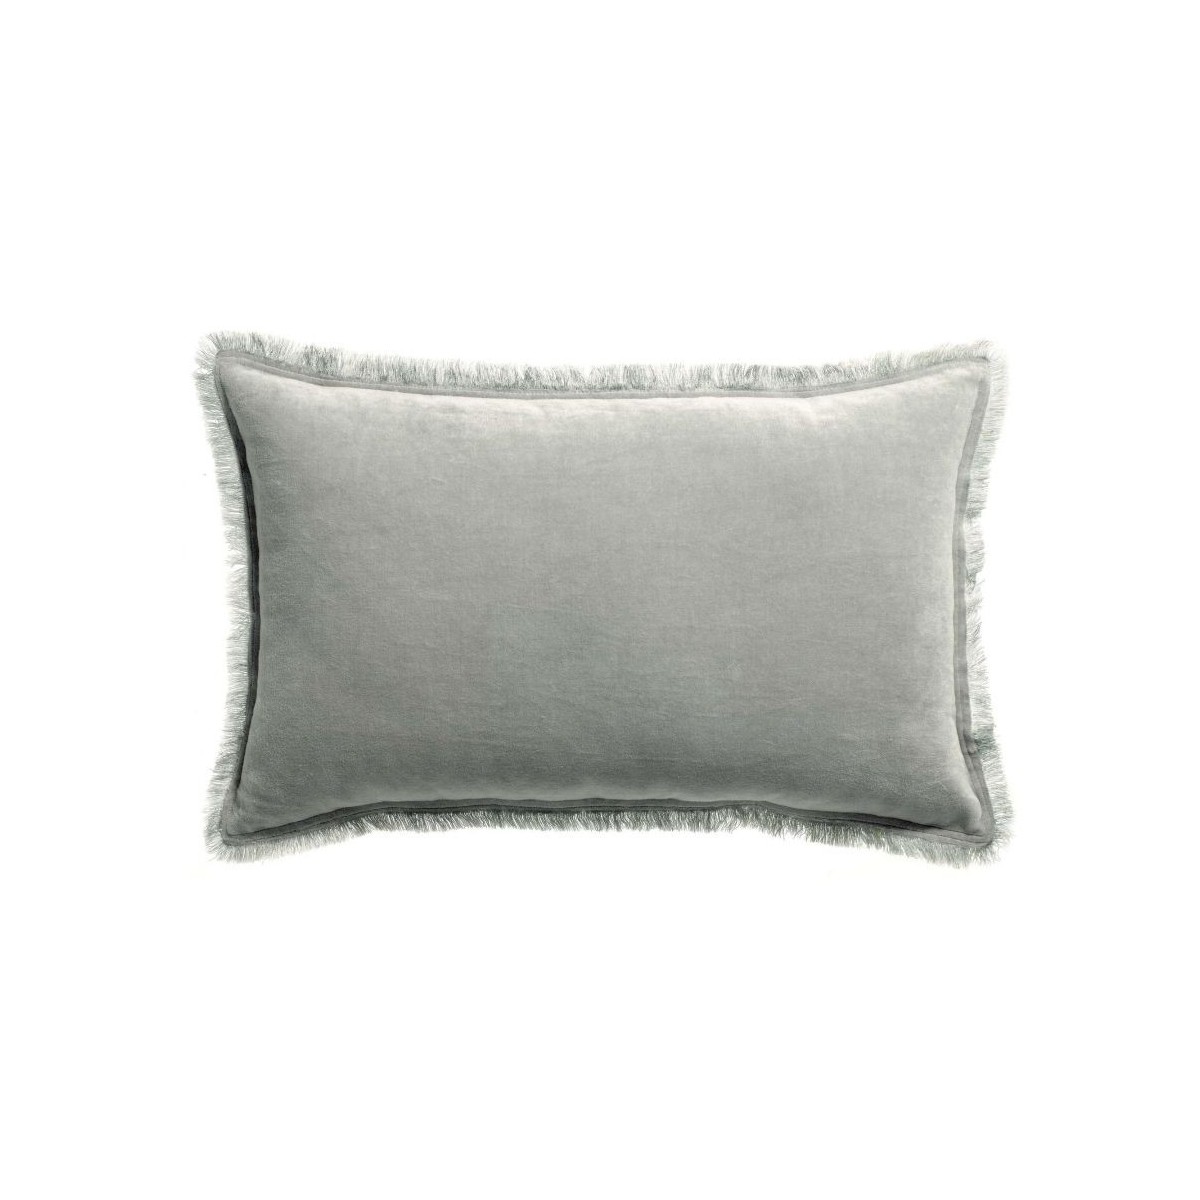 Coussin rectangulaire en coton gris clair avec frange